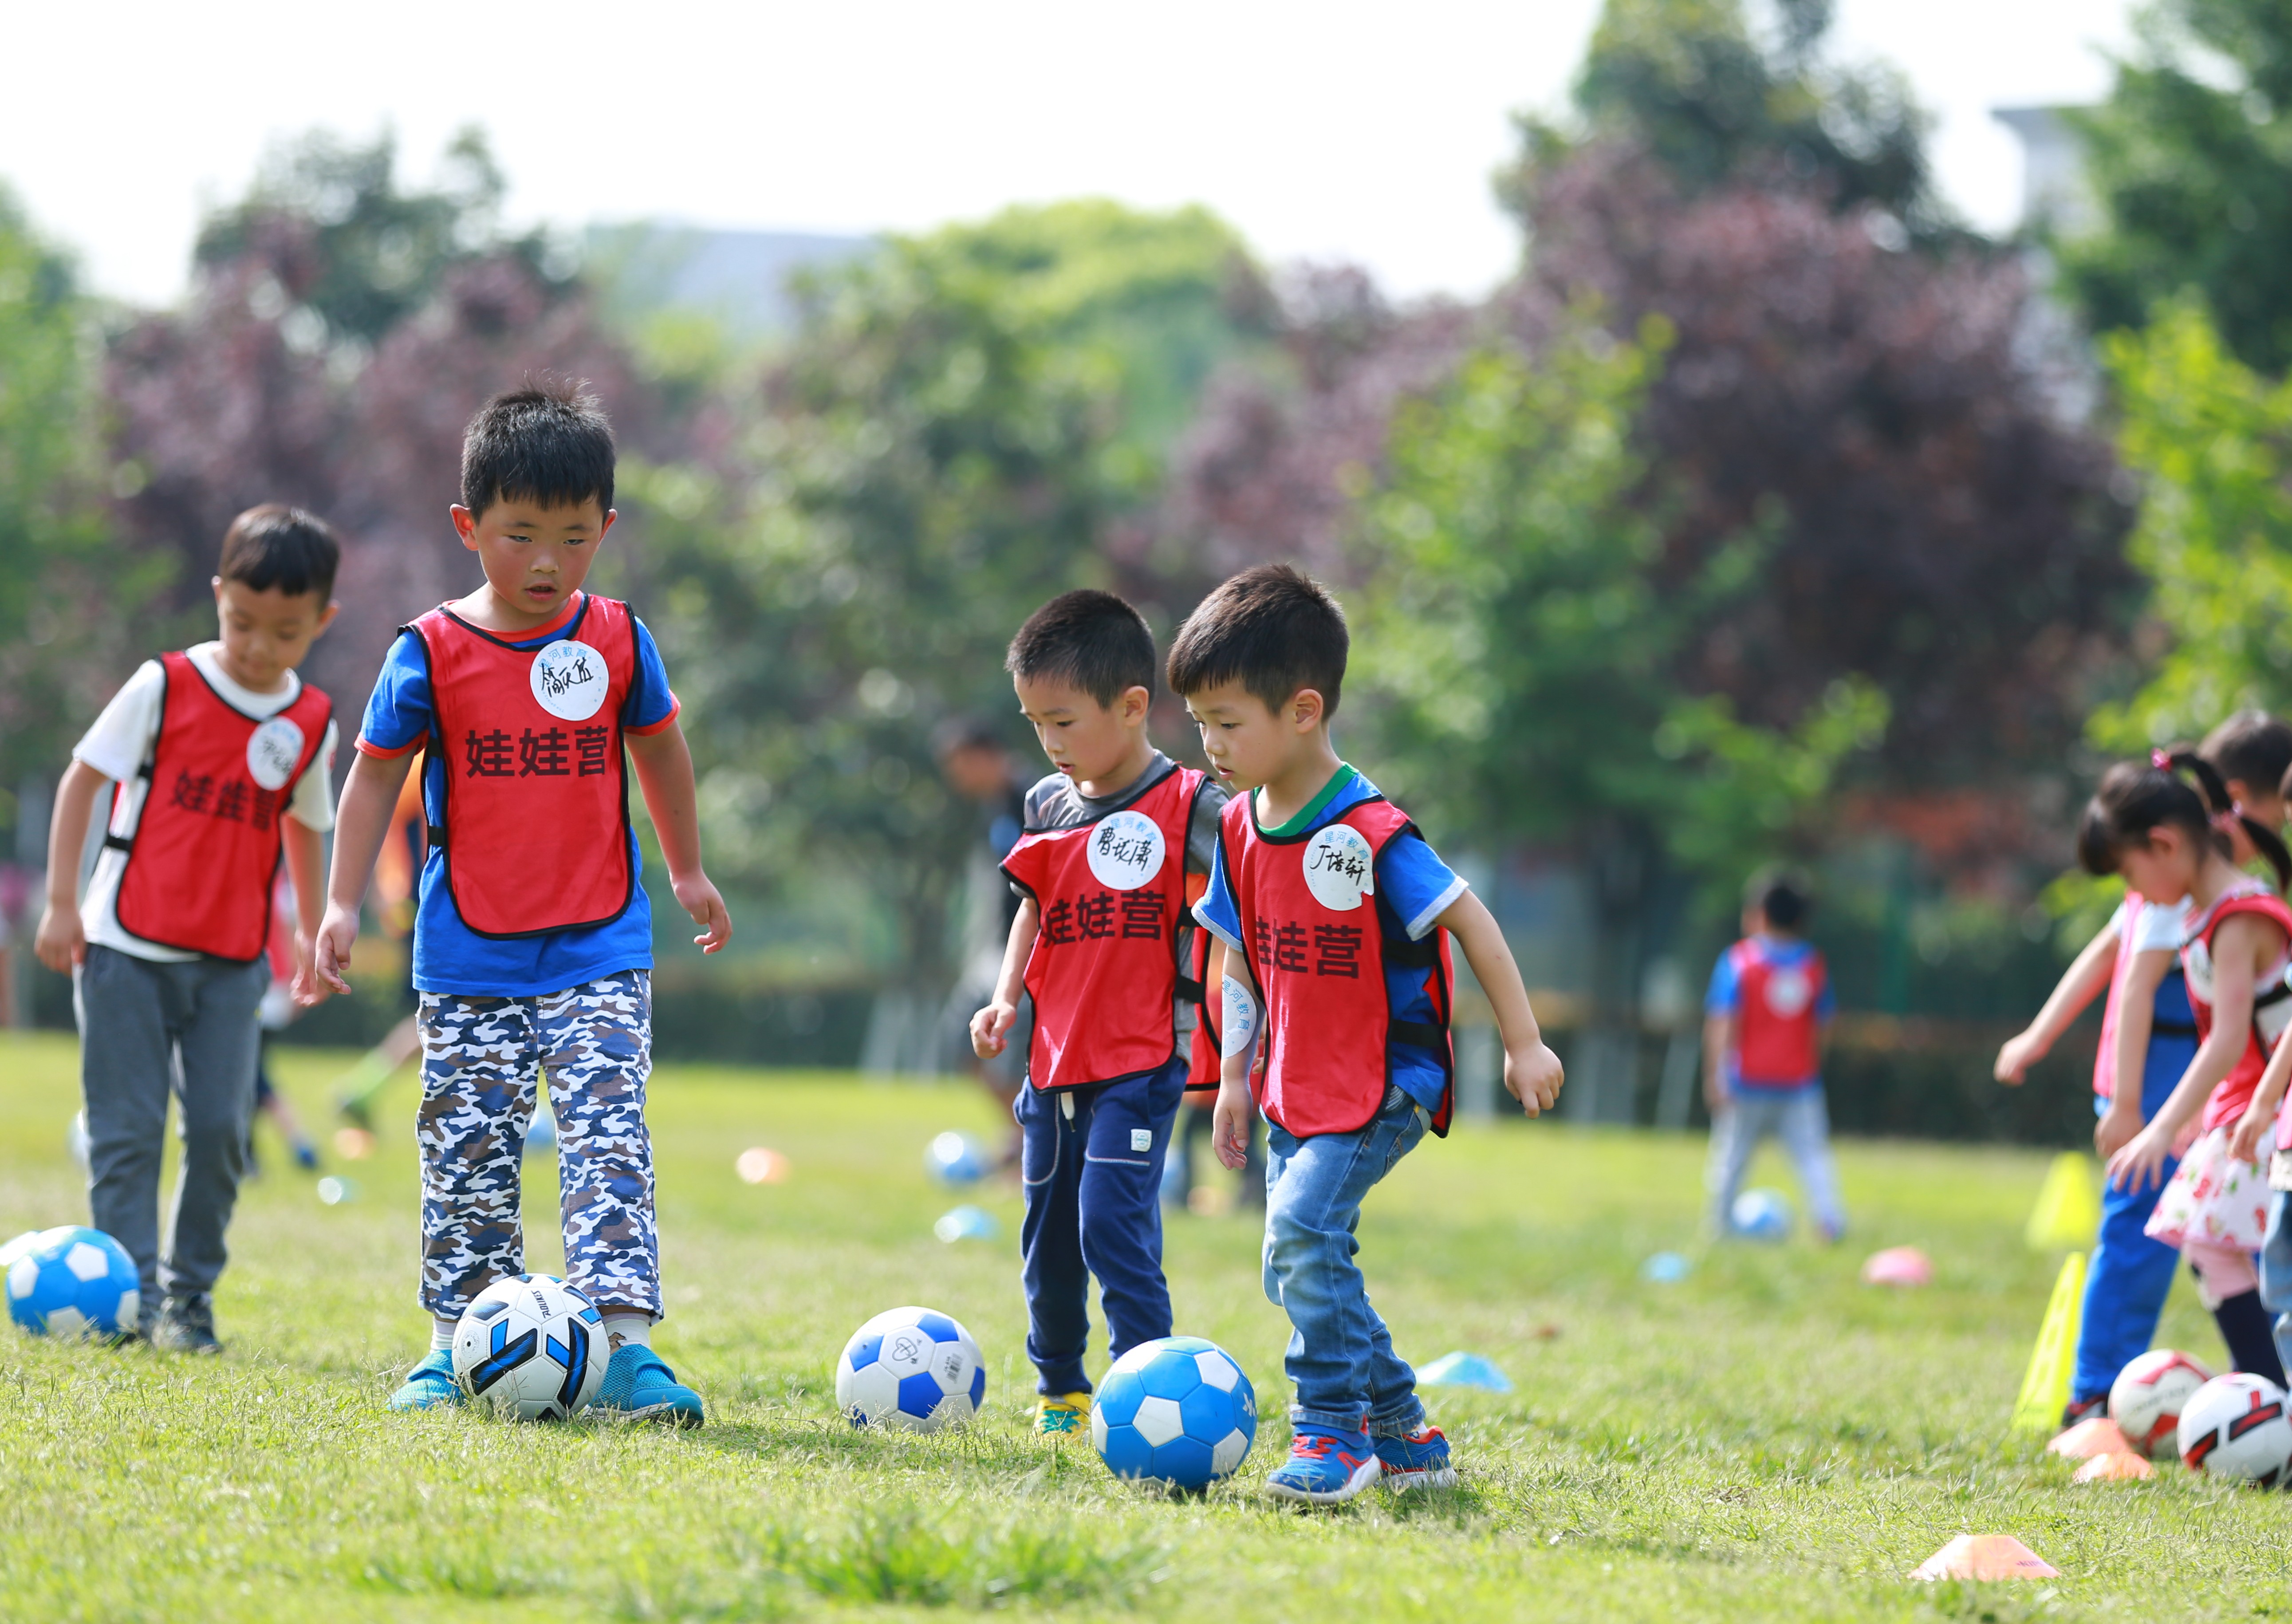 娃娃营外教访谈(4)克里斯:中国足球现在像15年